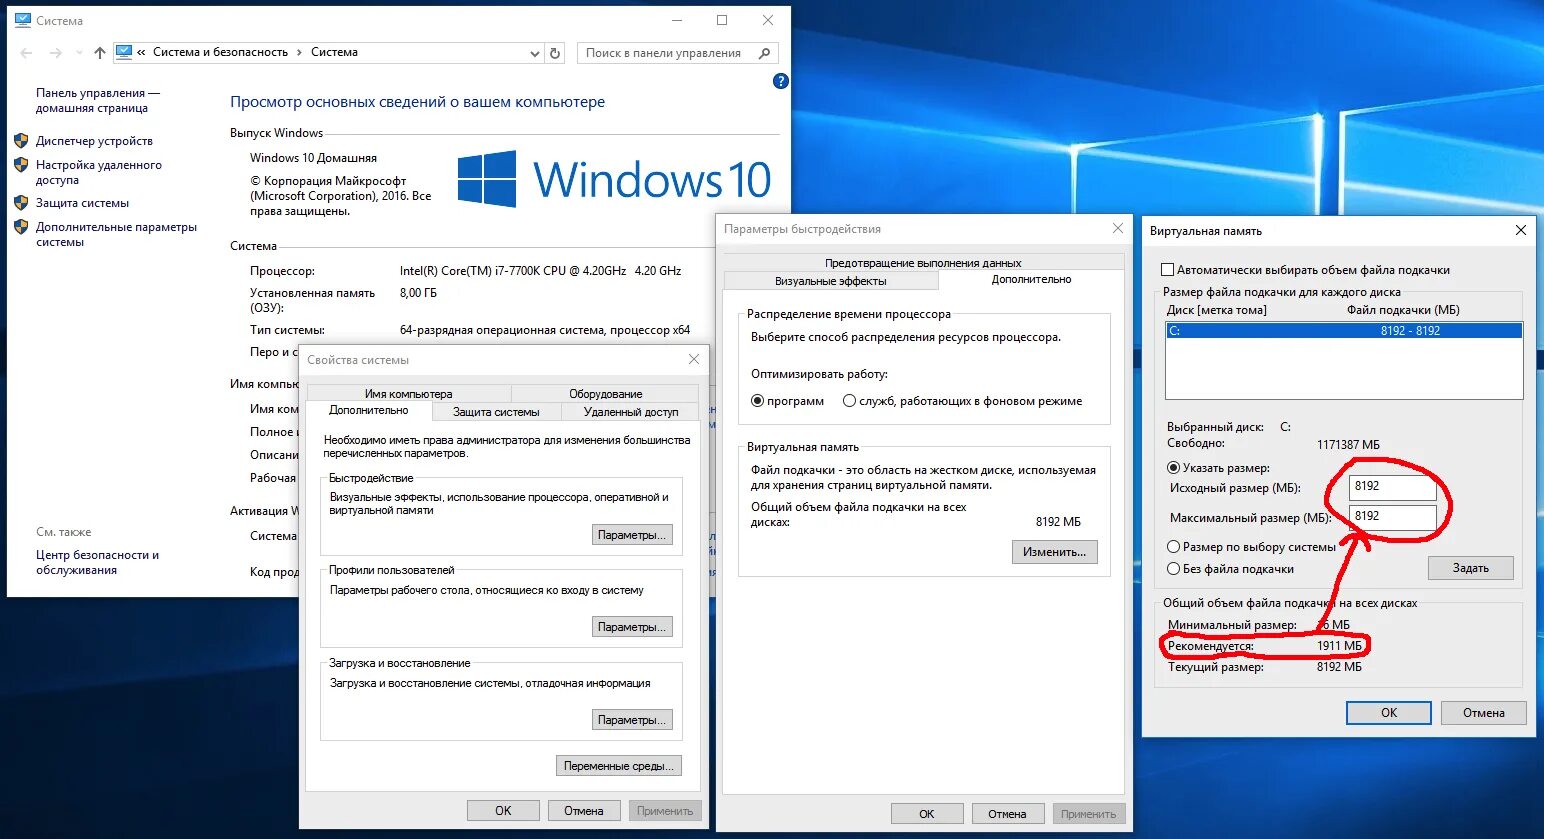 Виртуальная память виндовс 10. Файл подкачки win 10. Подкачка оперативной памяти Windows 10. Как поставить файл подкачки в виндовс 10. Увеличить подкачку памяти